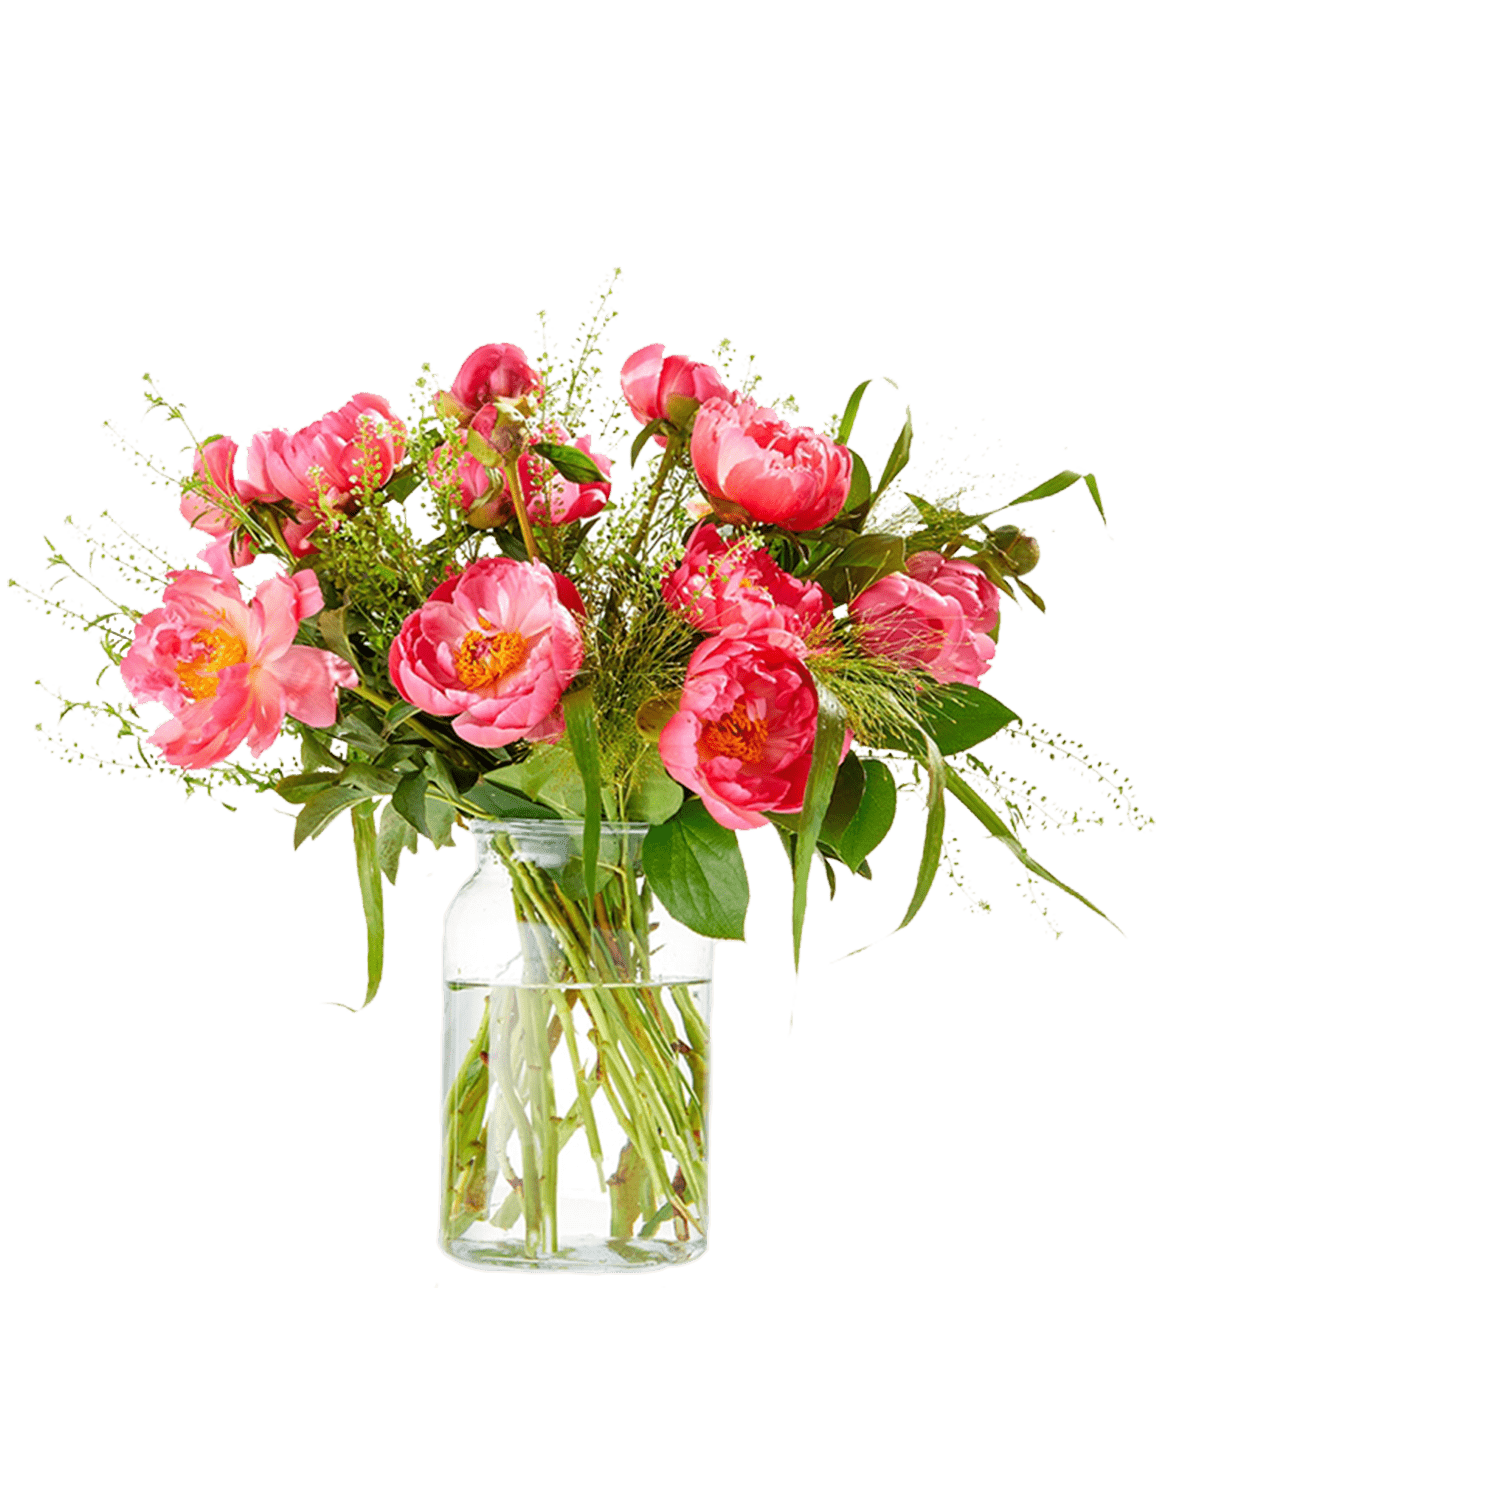 pioenen-pioenroos-bloemist-eindhoven-bloemen